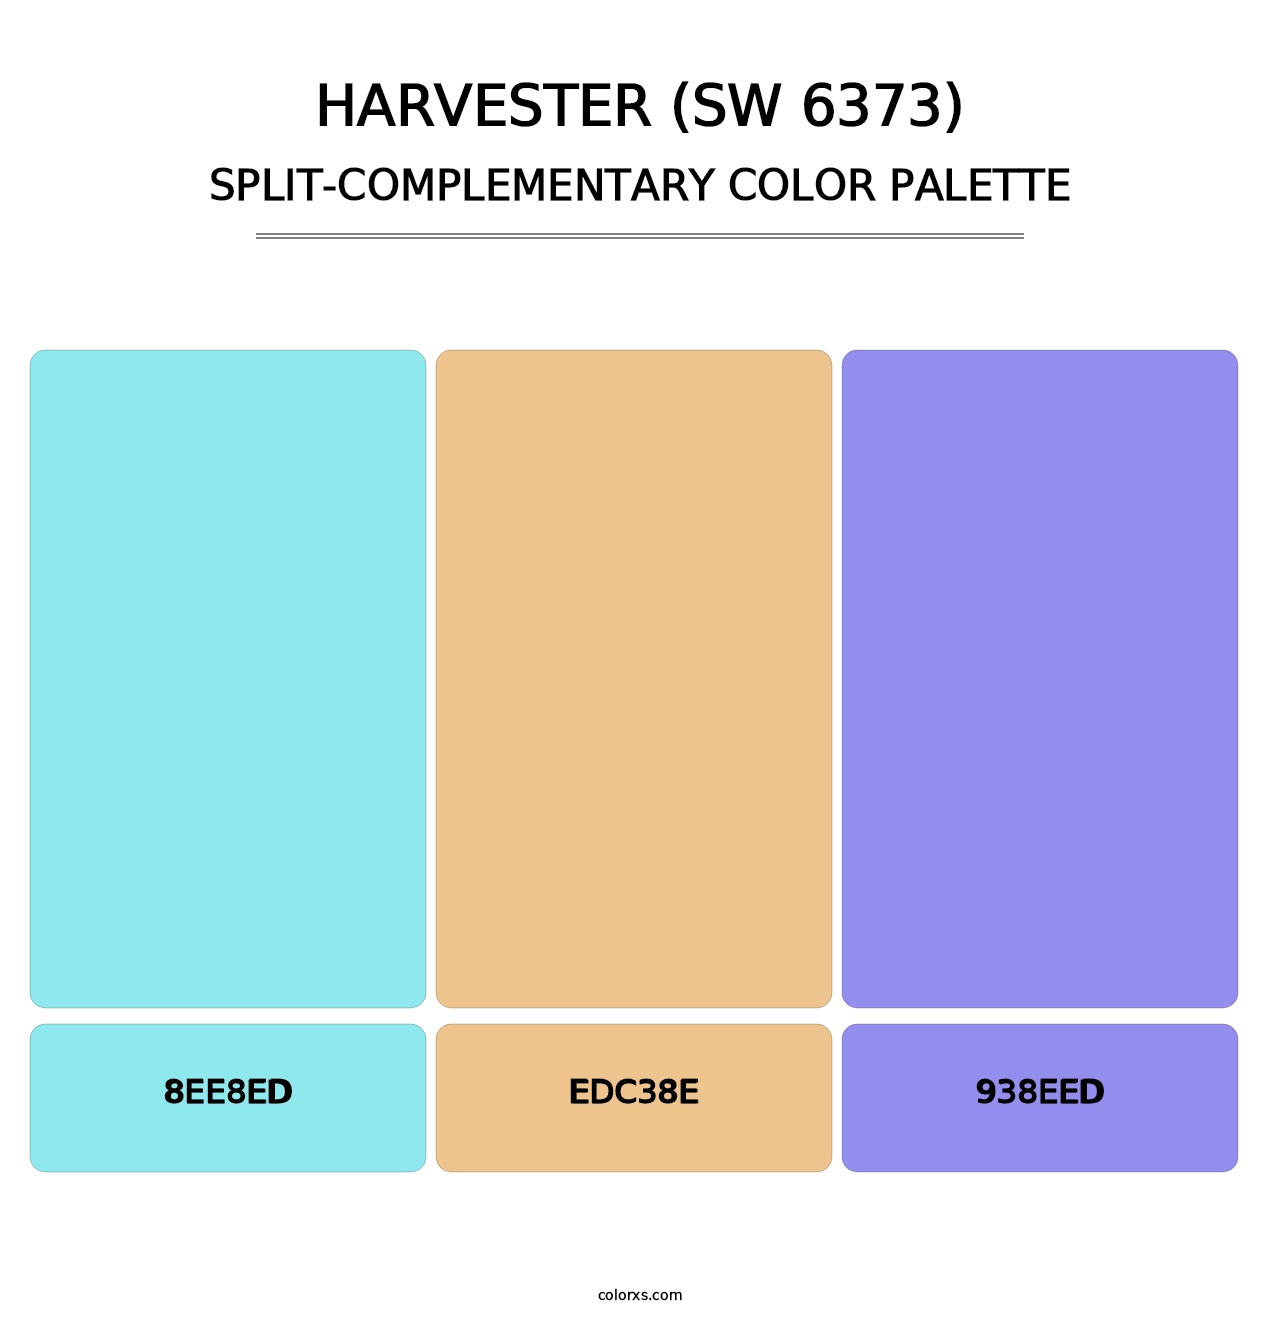 Harvester (SW 6373) - Split-Complementary Color Palette